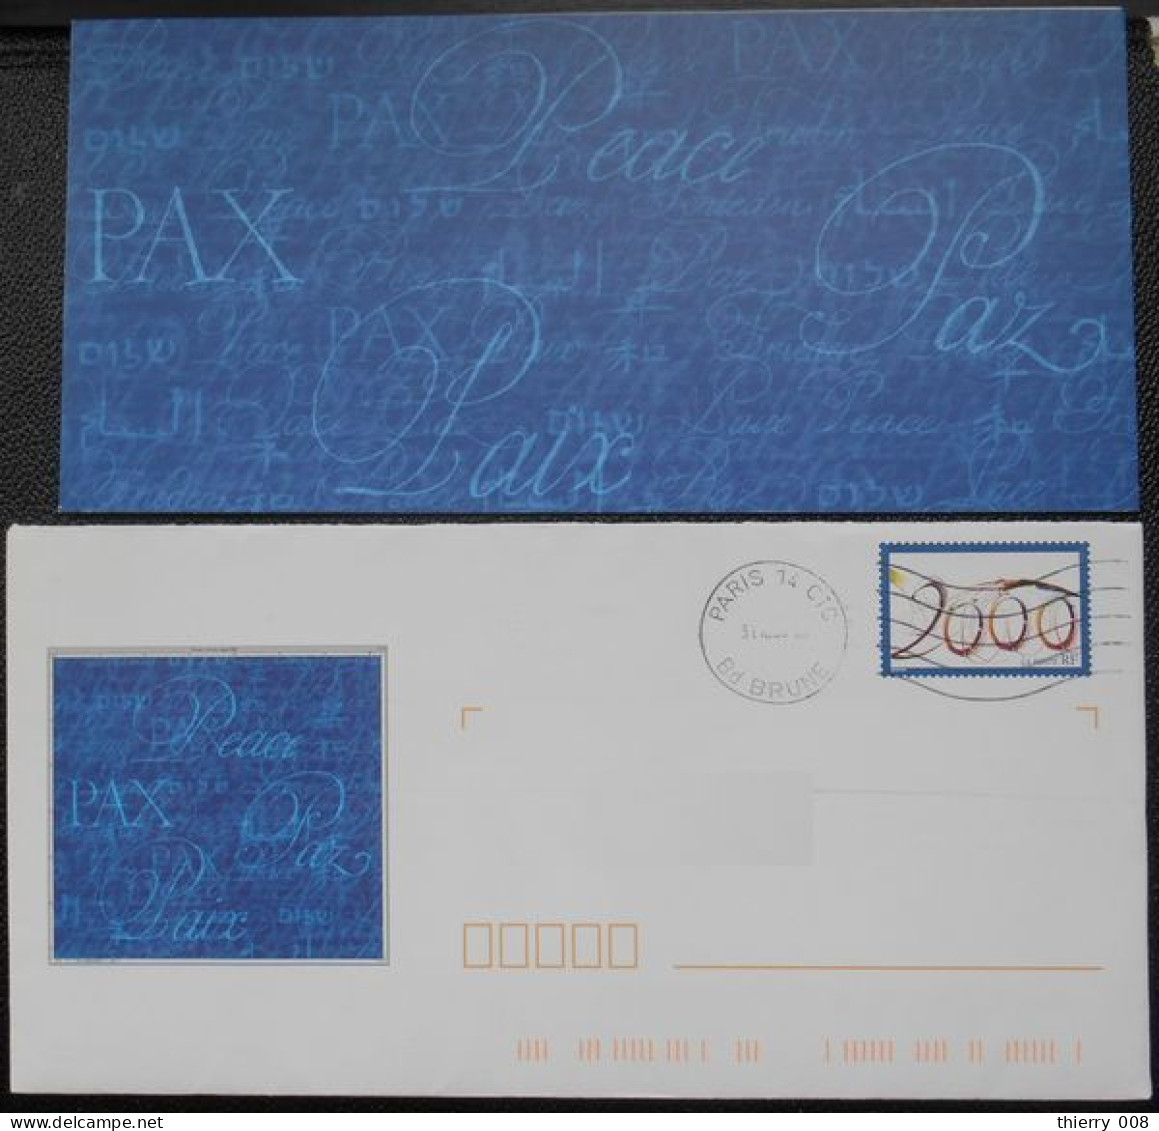 Enveloppe PAP De Service La Poste Timbre An 2000  Oblitéré  Avec Son Carton Non écrit - Storia Postale